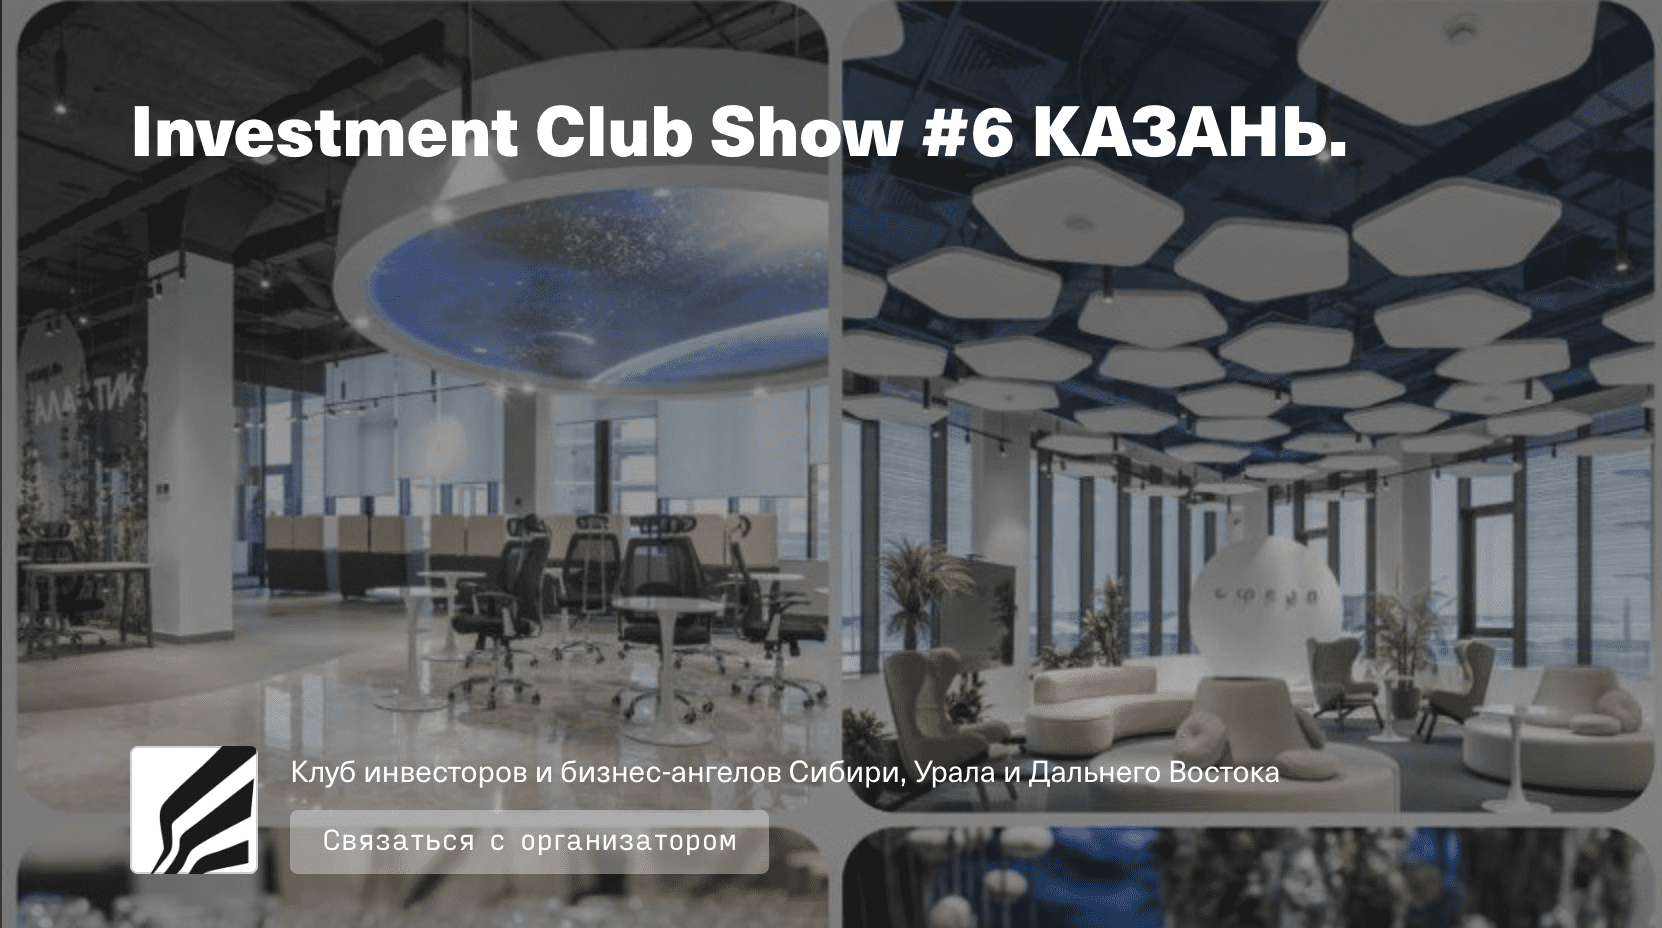 Investment Club Show в Казани